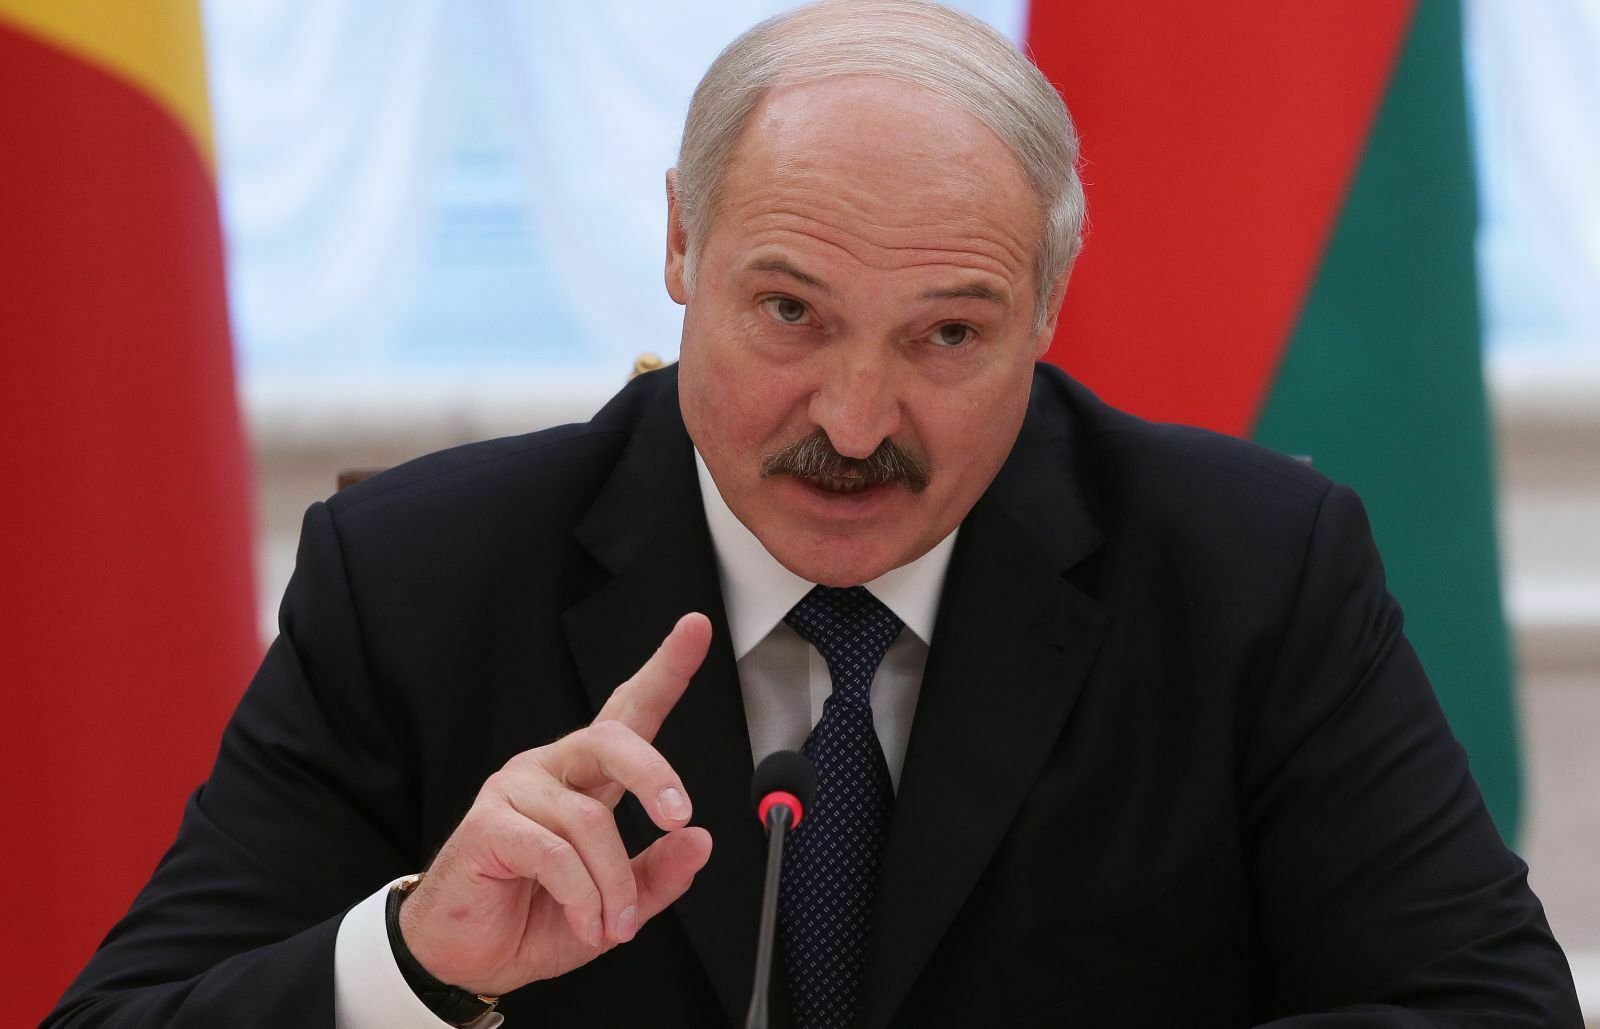 Вопреки эпидемии: Лукашенко заявил, что выборы президента пройдут этим летом